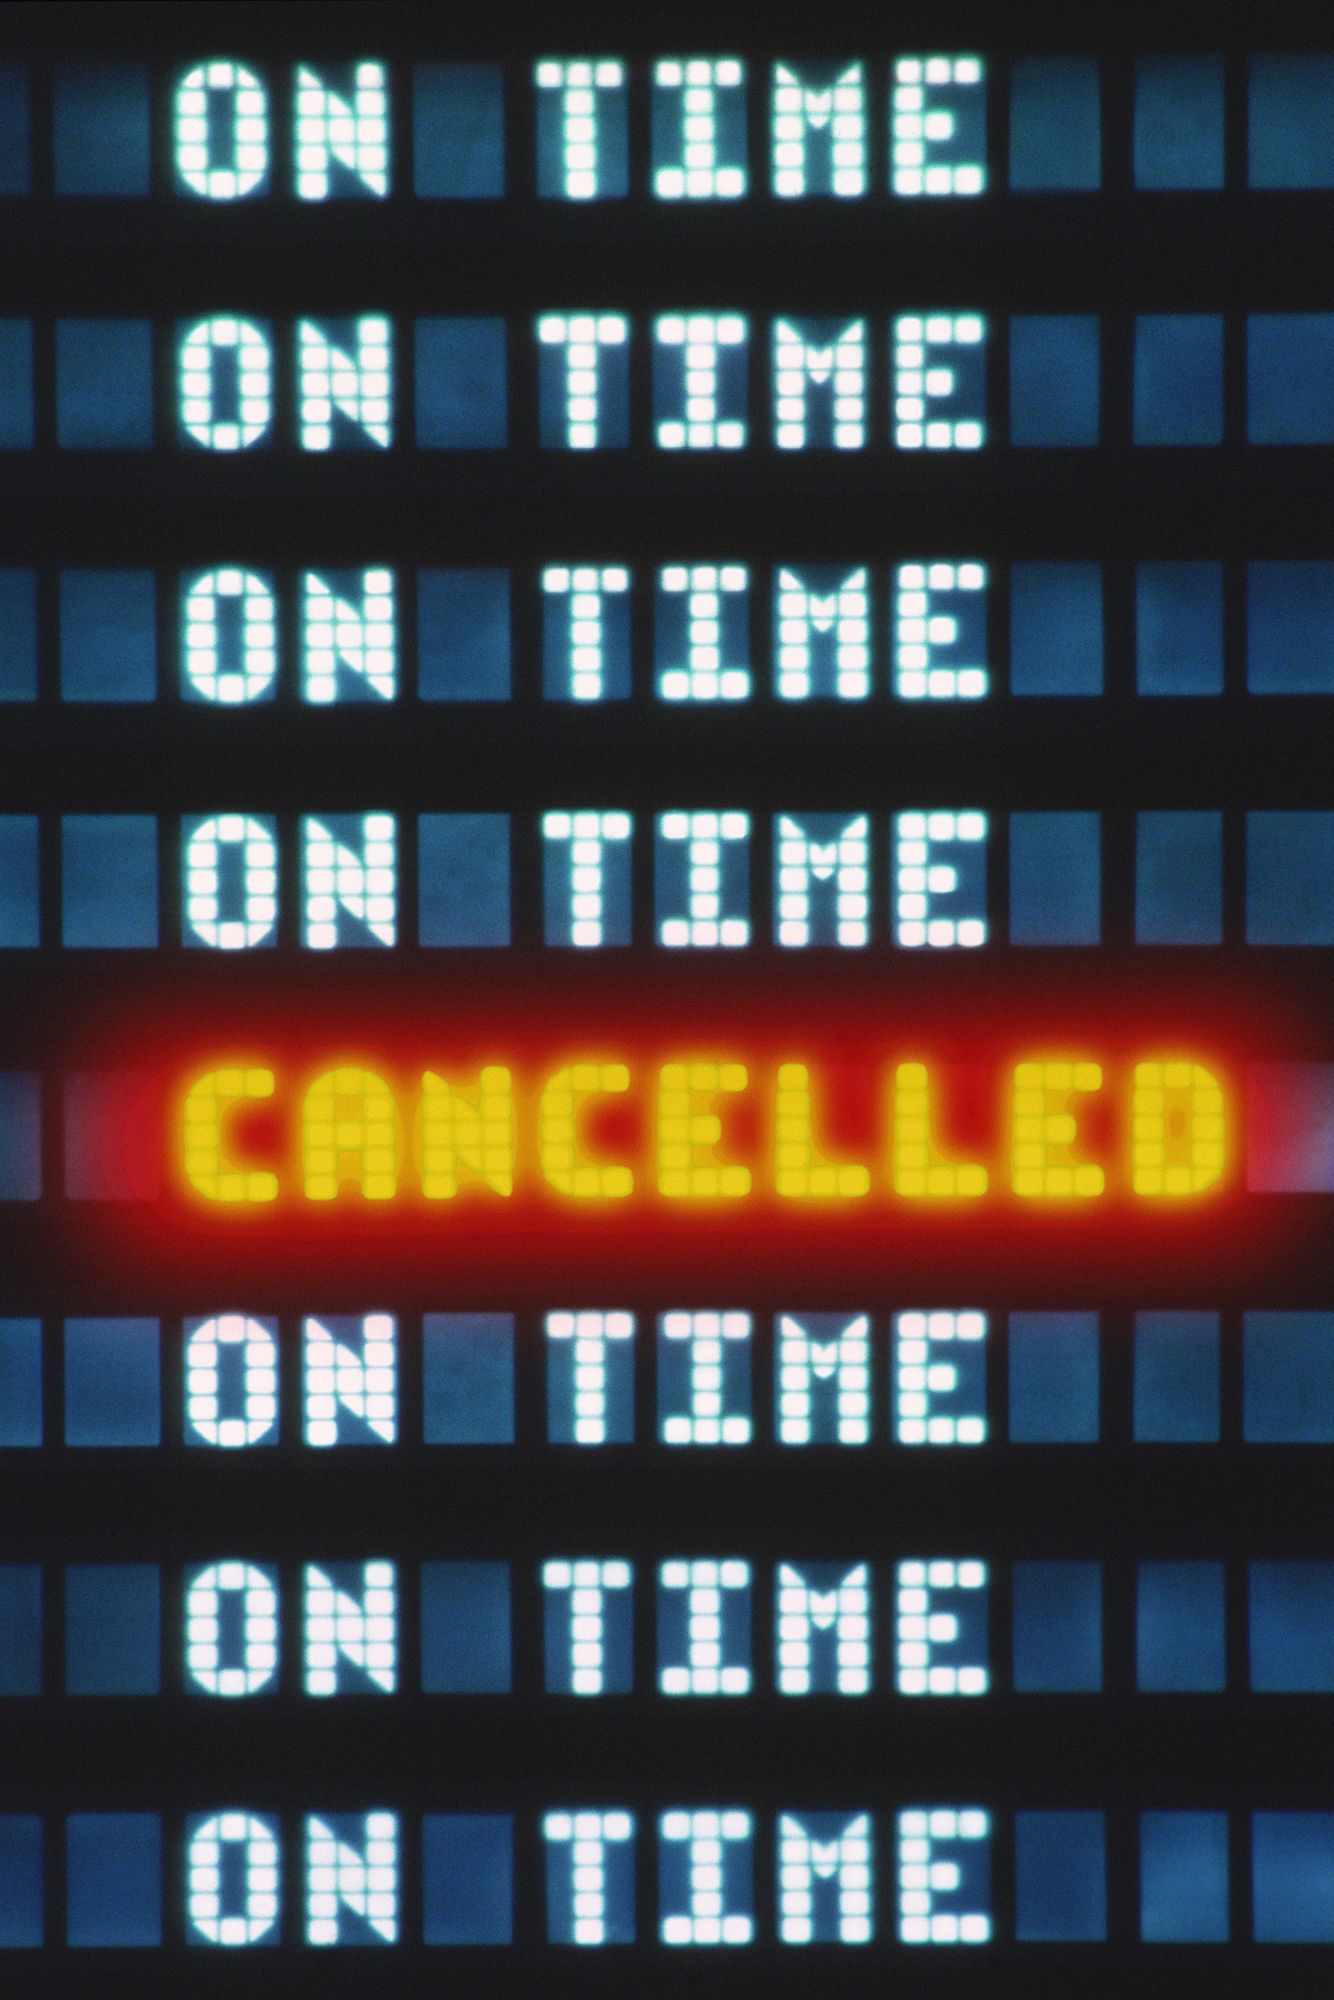 Pantalla de vuelo cancelado en el aeropuerto